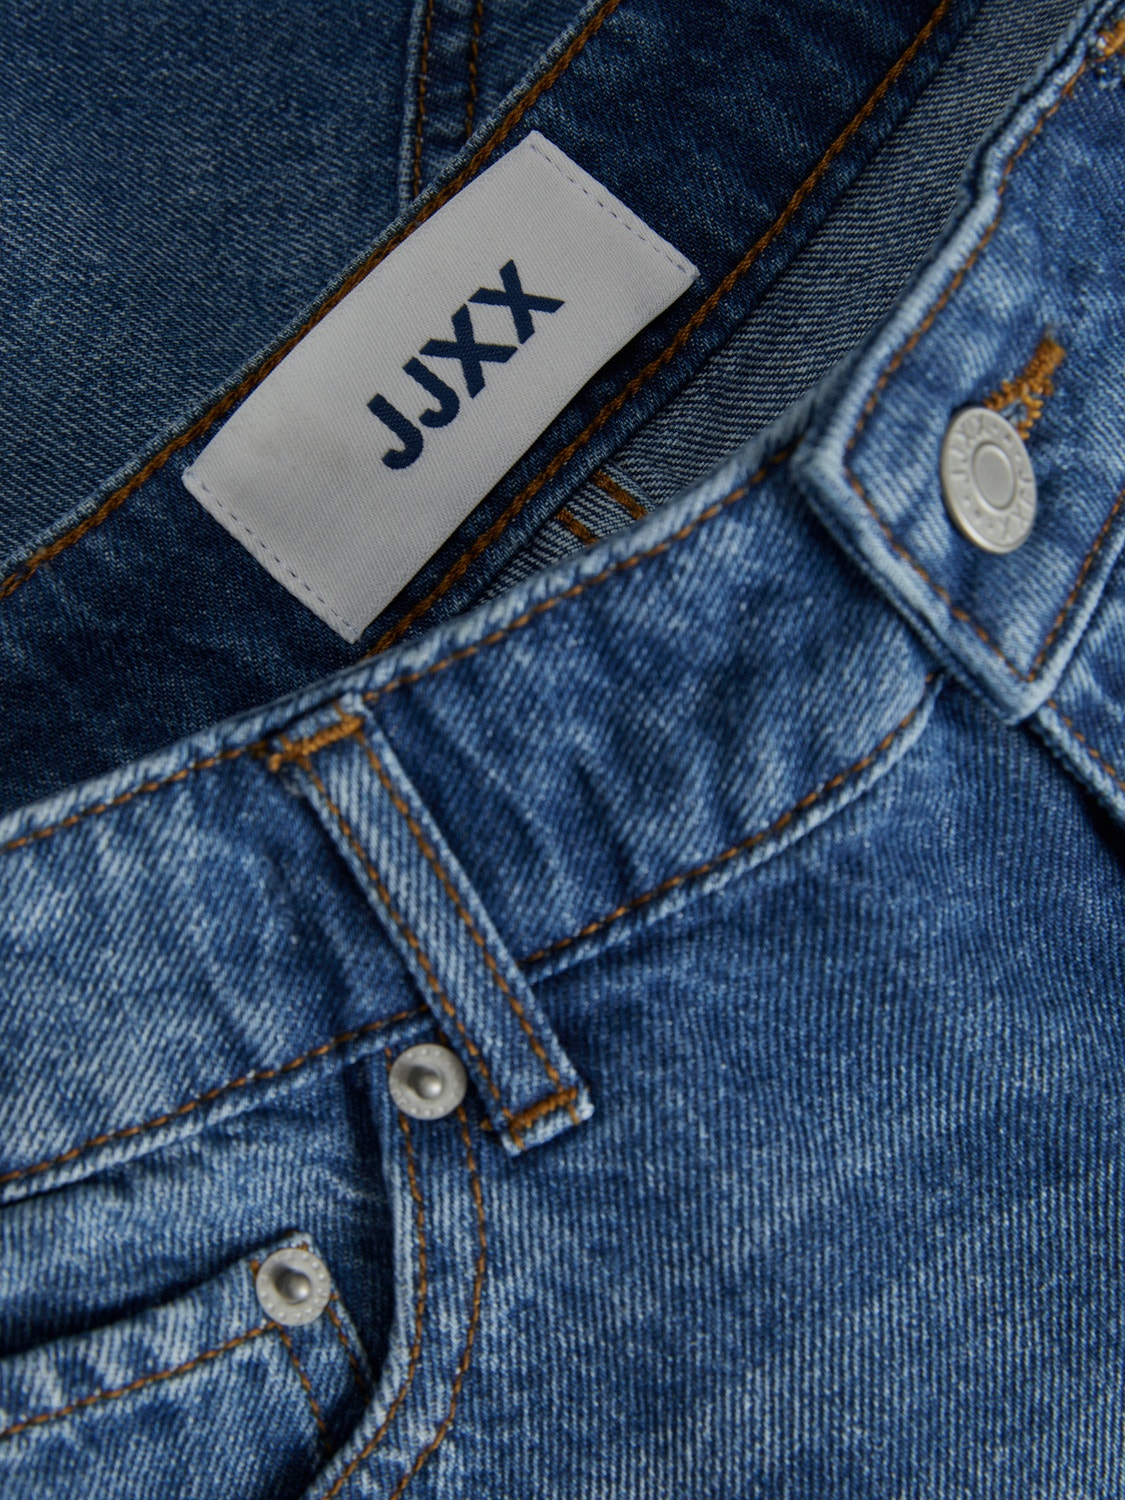 JJXX JXAURA Jeans Shorts -Medium Blue Denim - 12227837